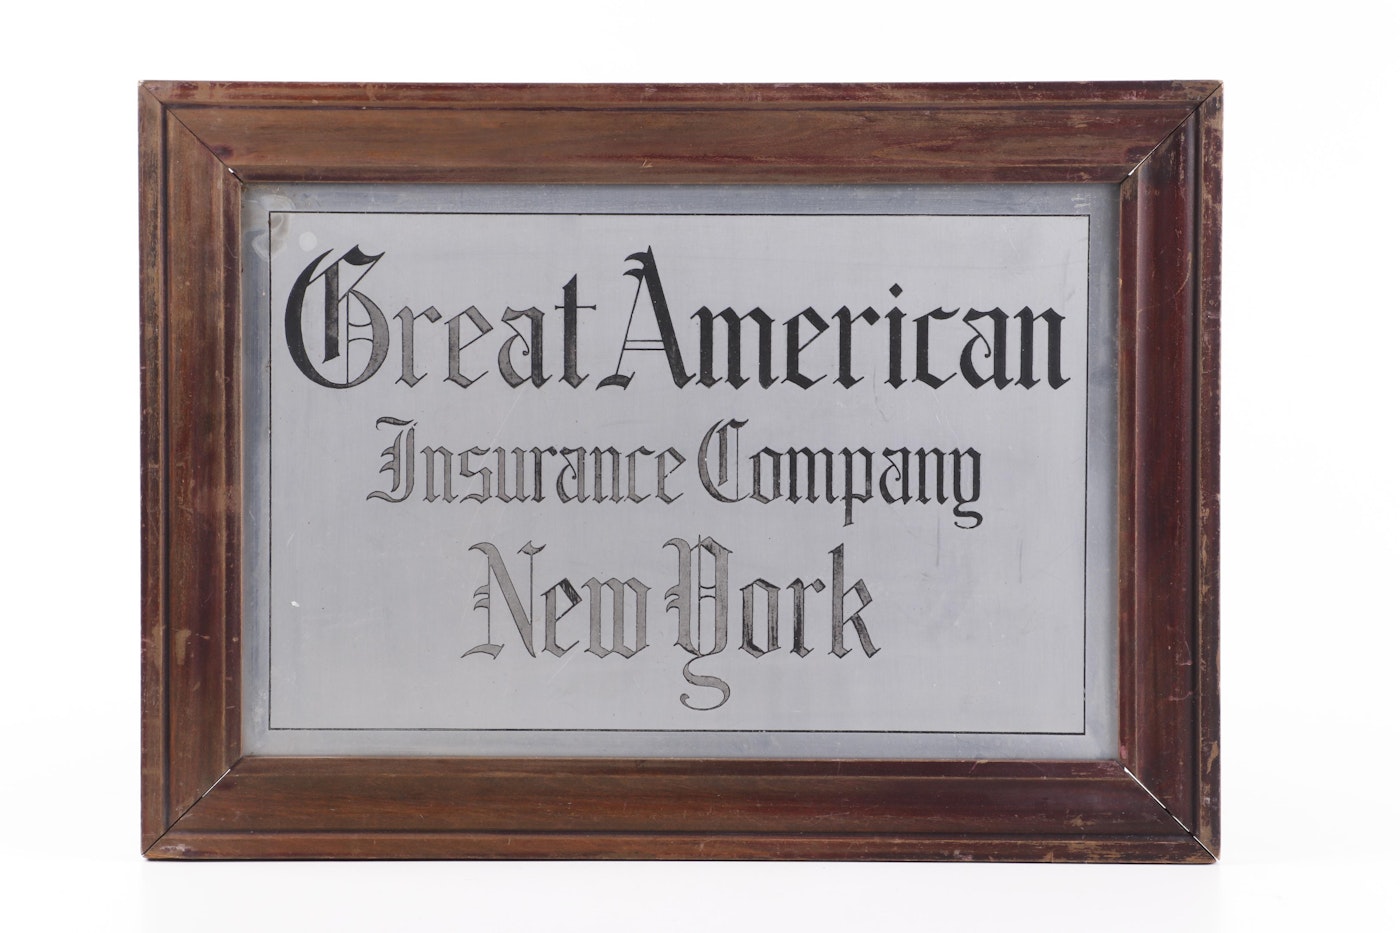 20th century insurance company